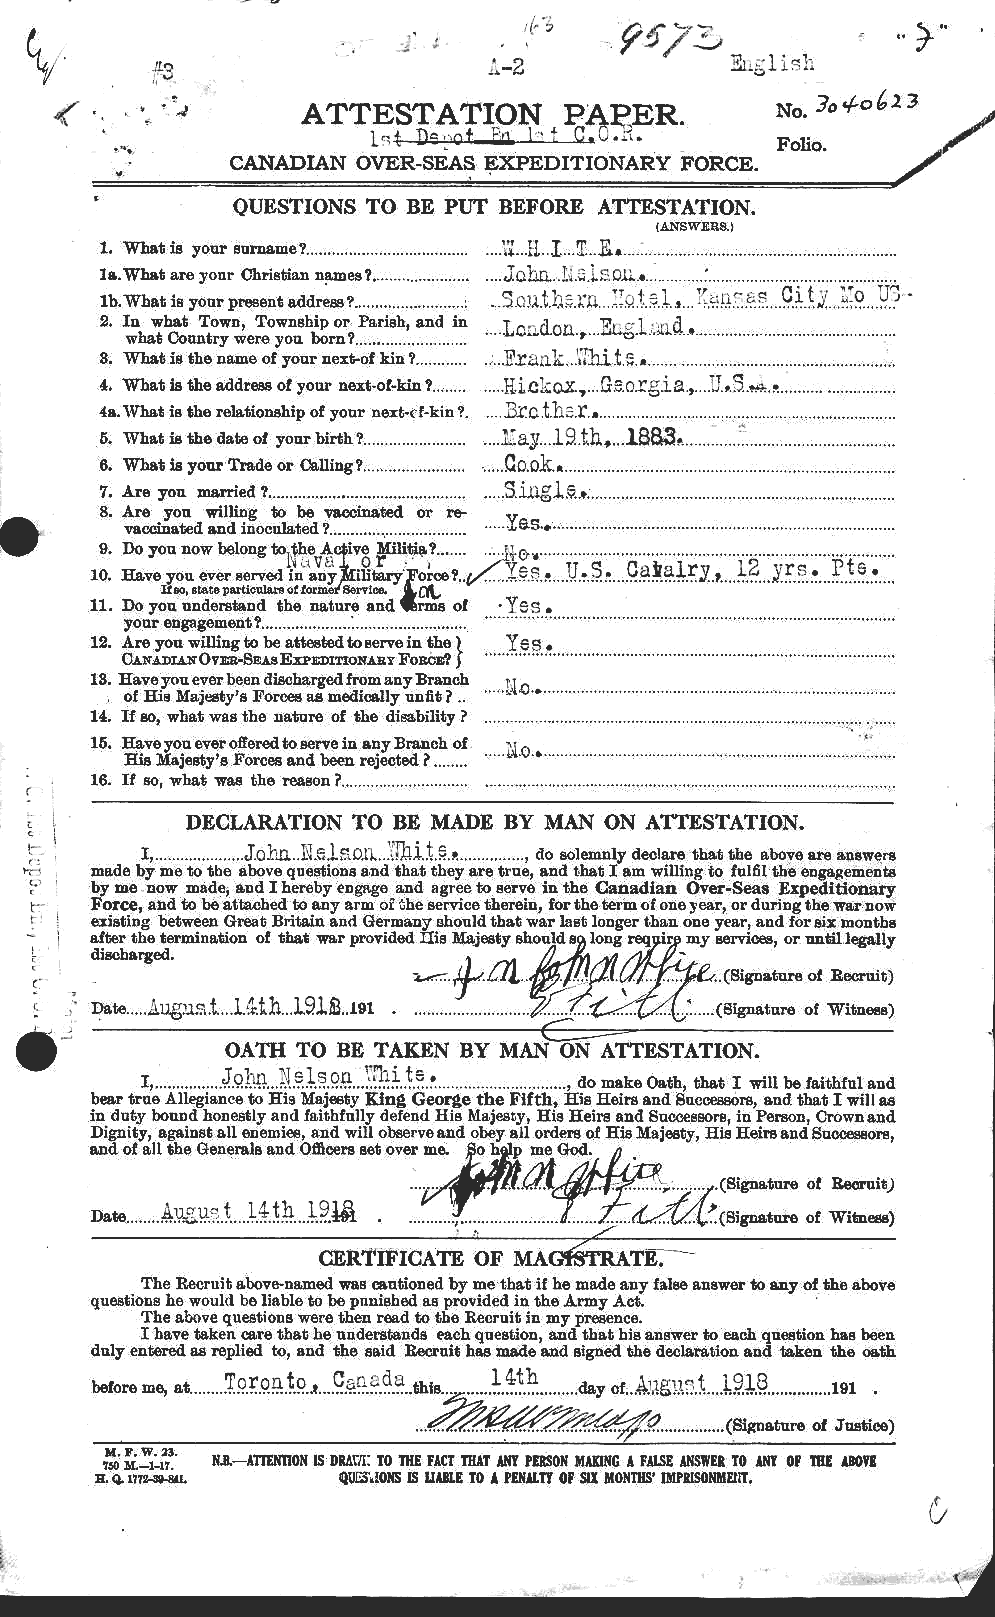 Dossiers du Personnel de la Première Guerre mondiale - CEC 671586a